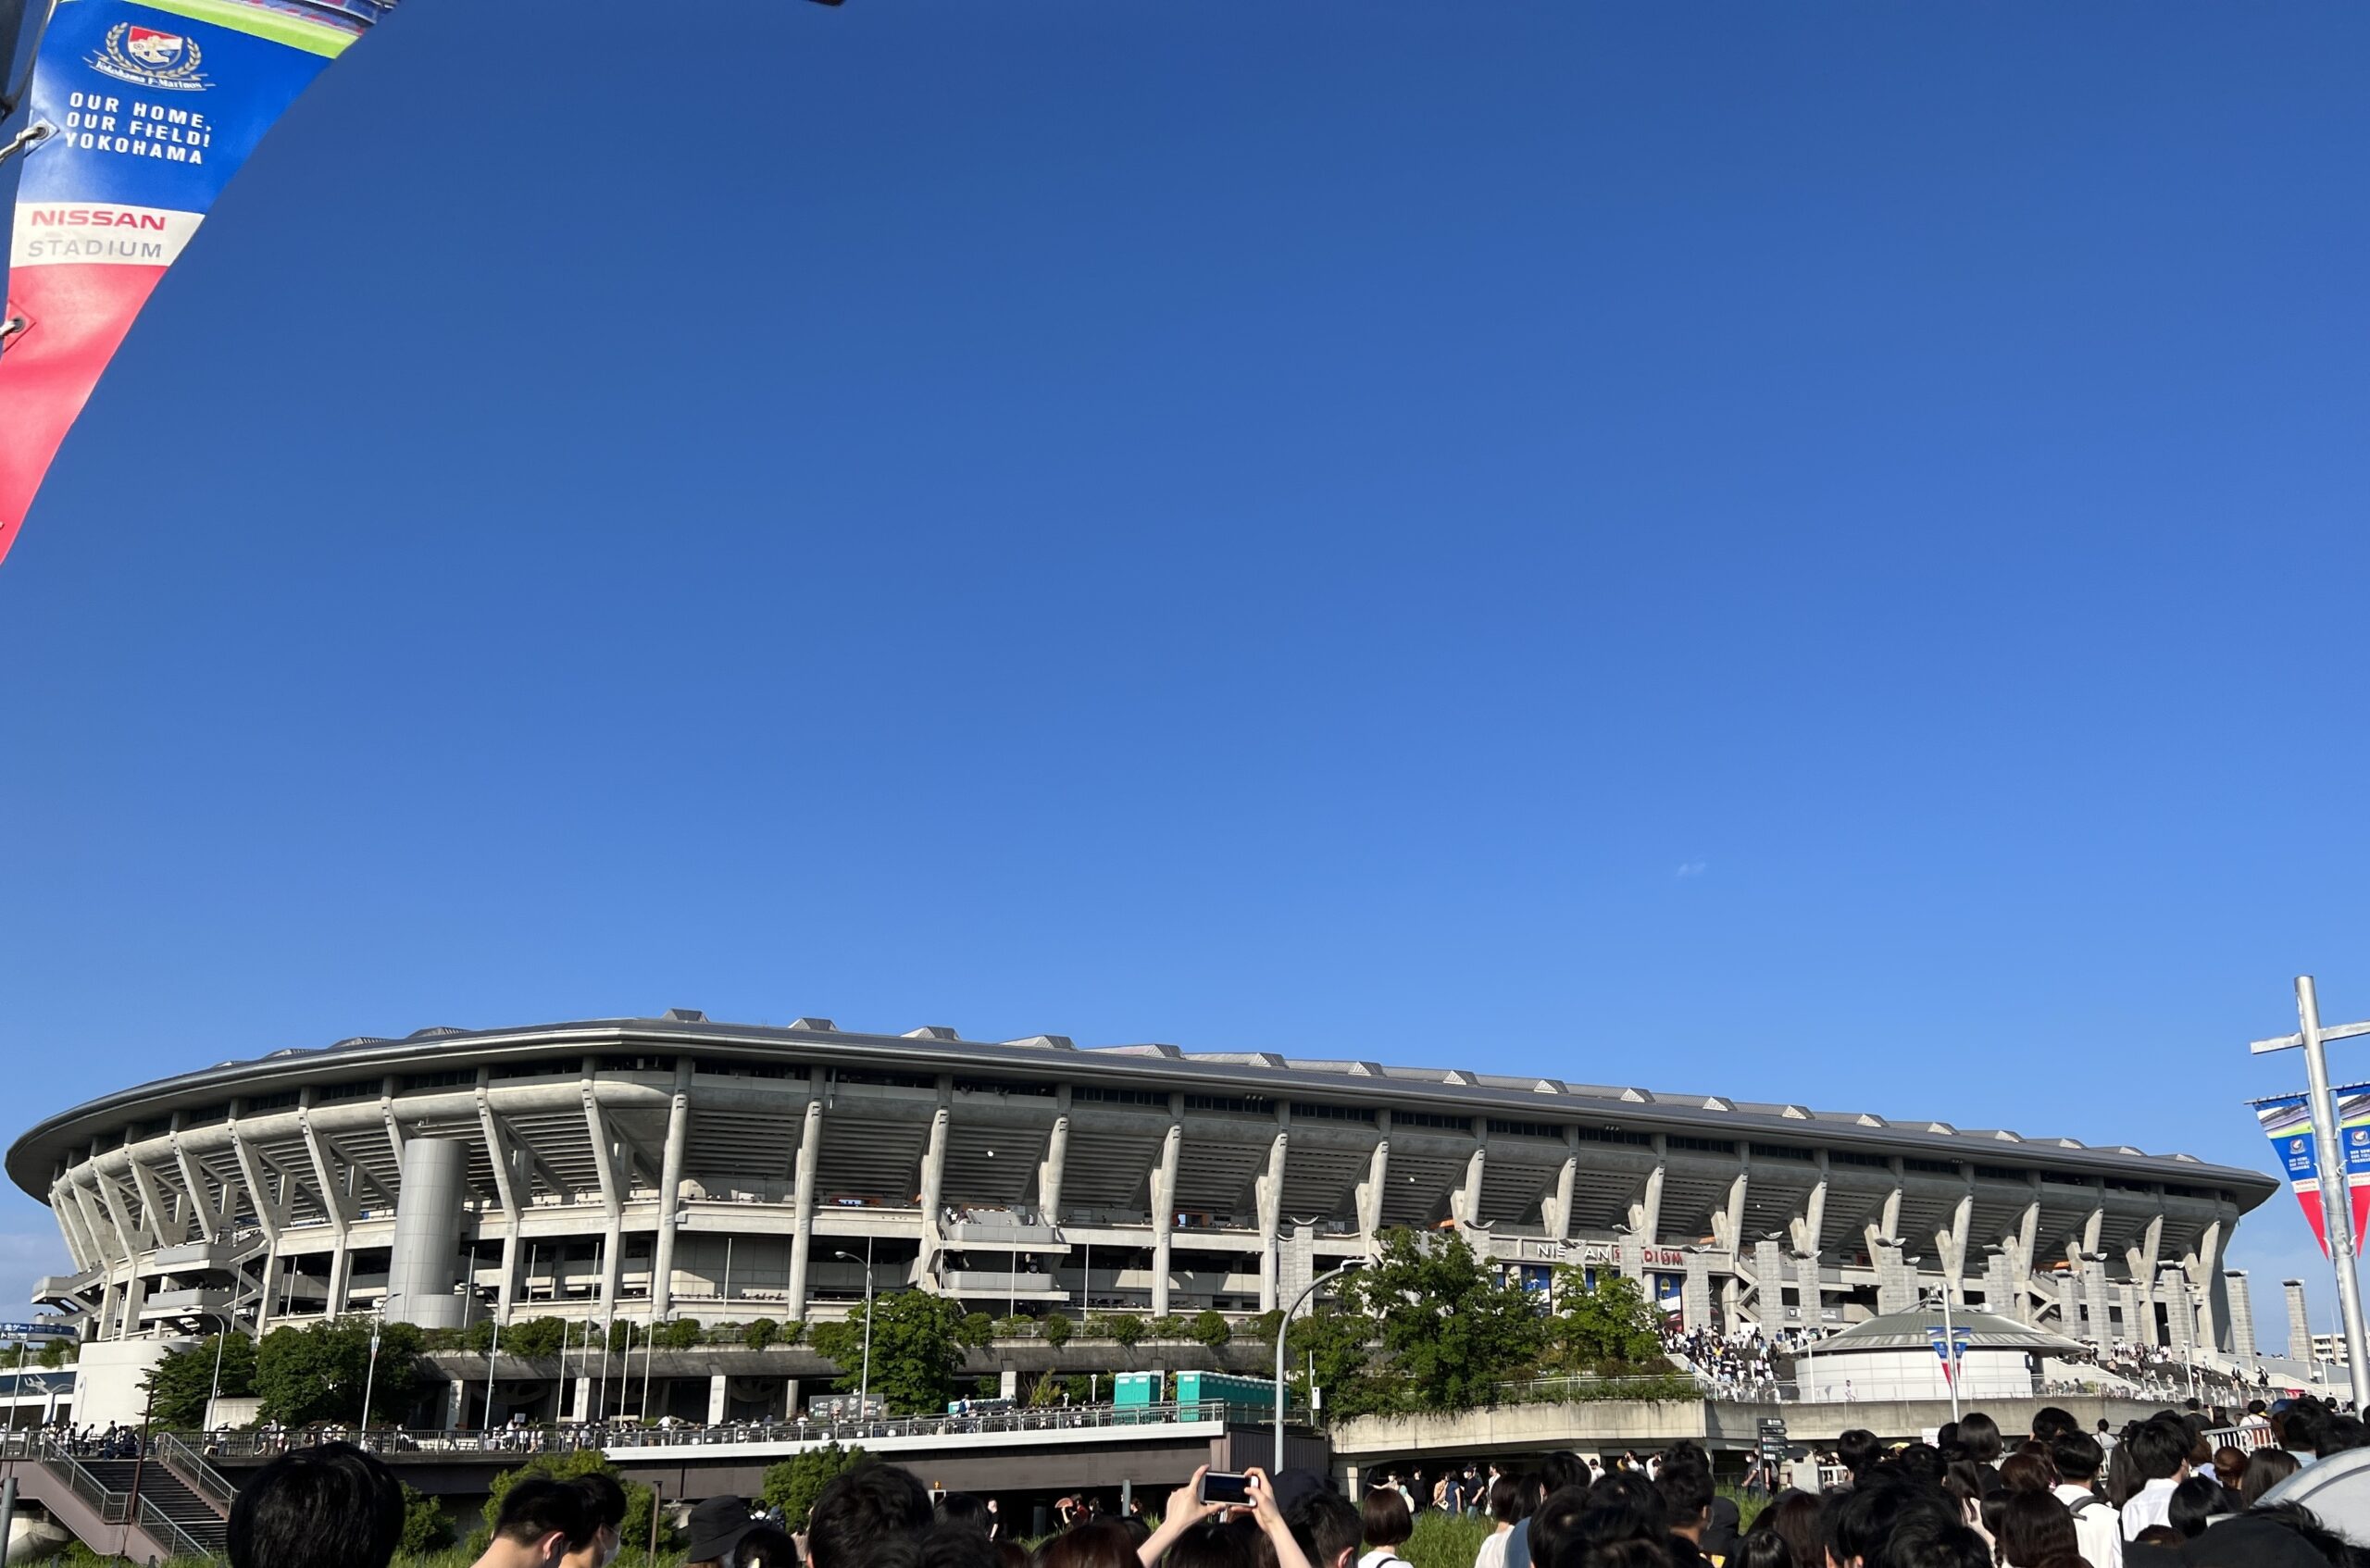 日産スタジアムの外観と青空の写真